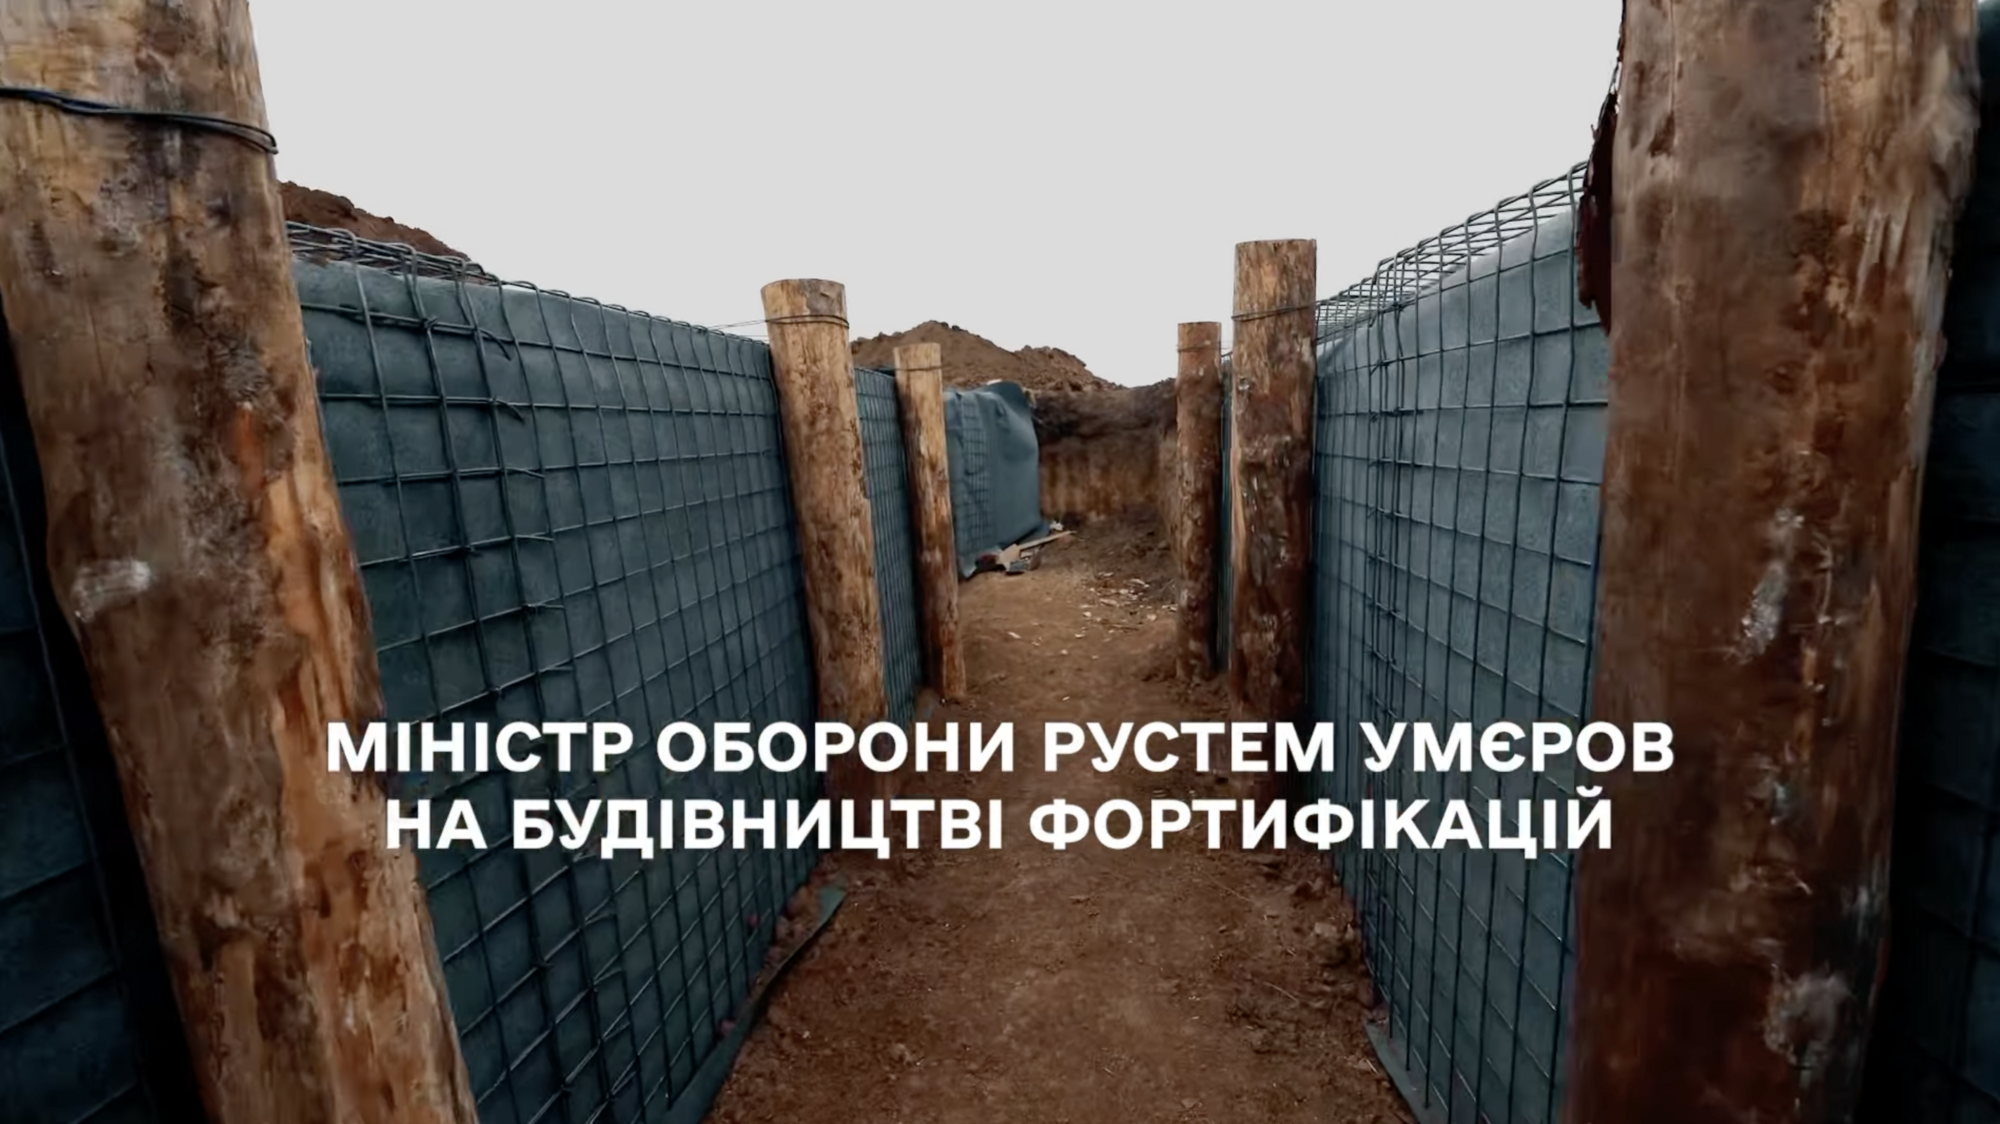 Умєров перевірив хід будівництва фортифікацій на Запорізькому напрямку. Відео
